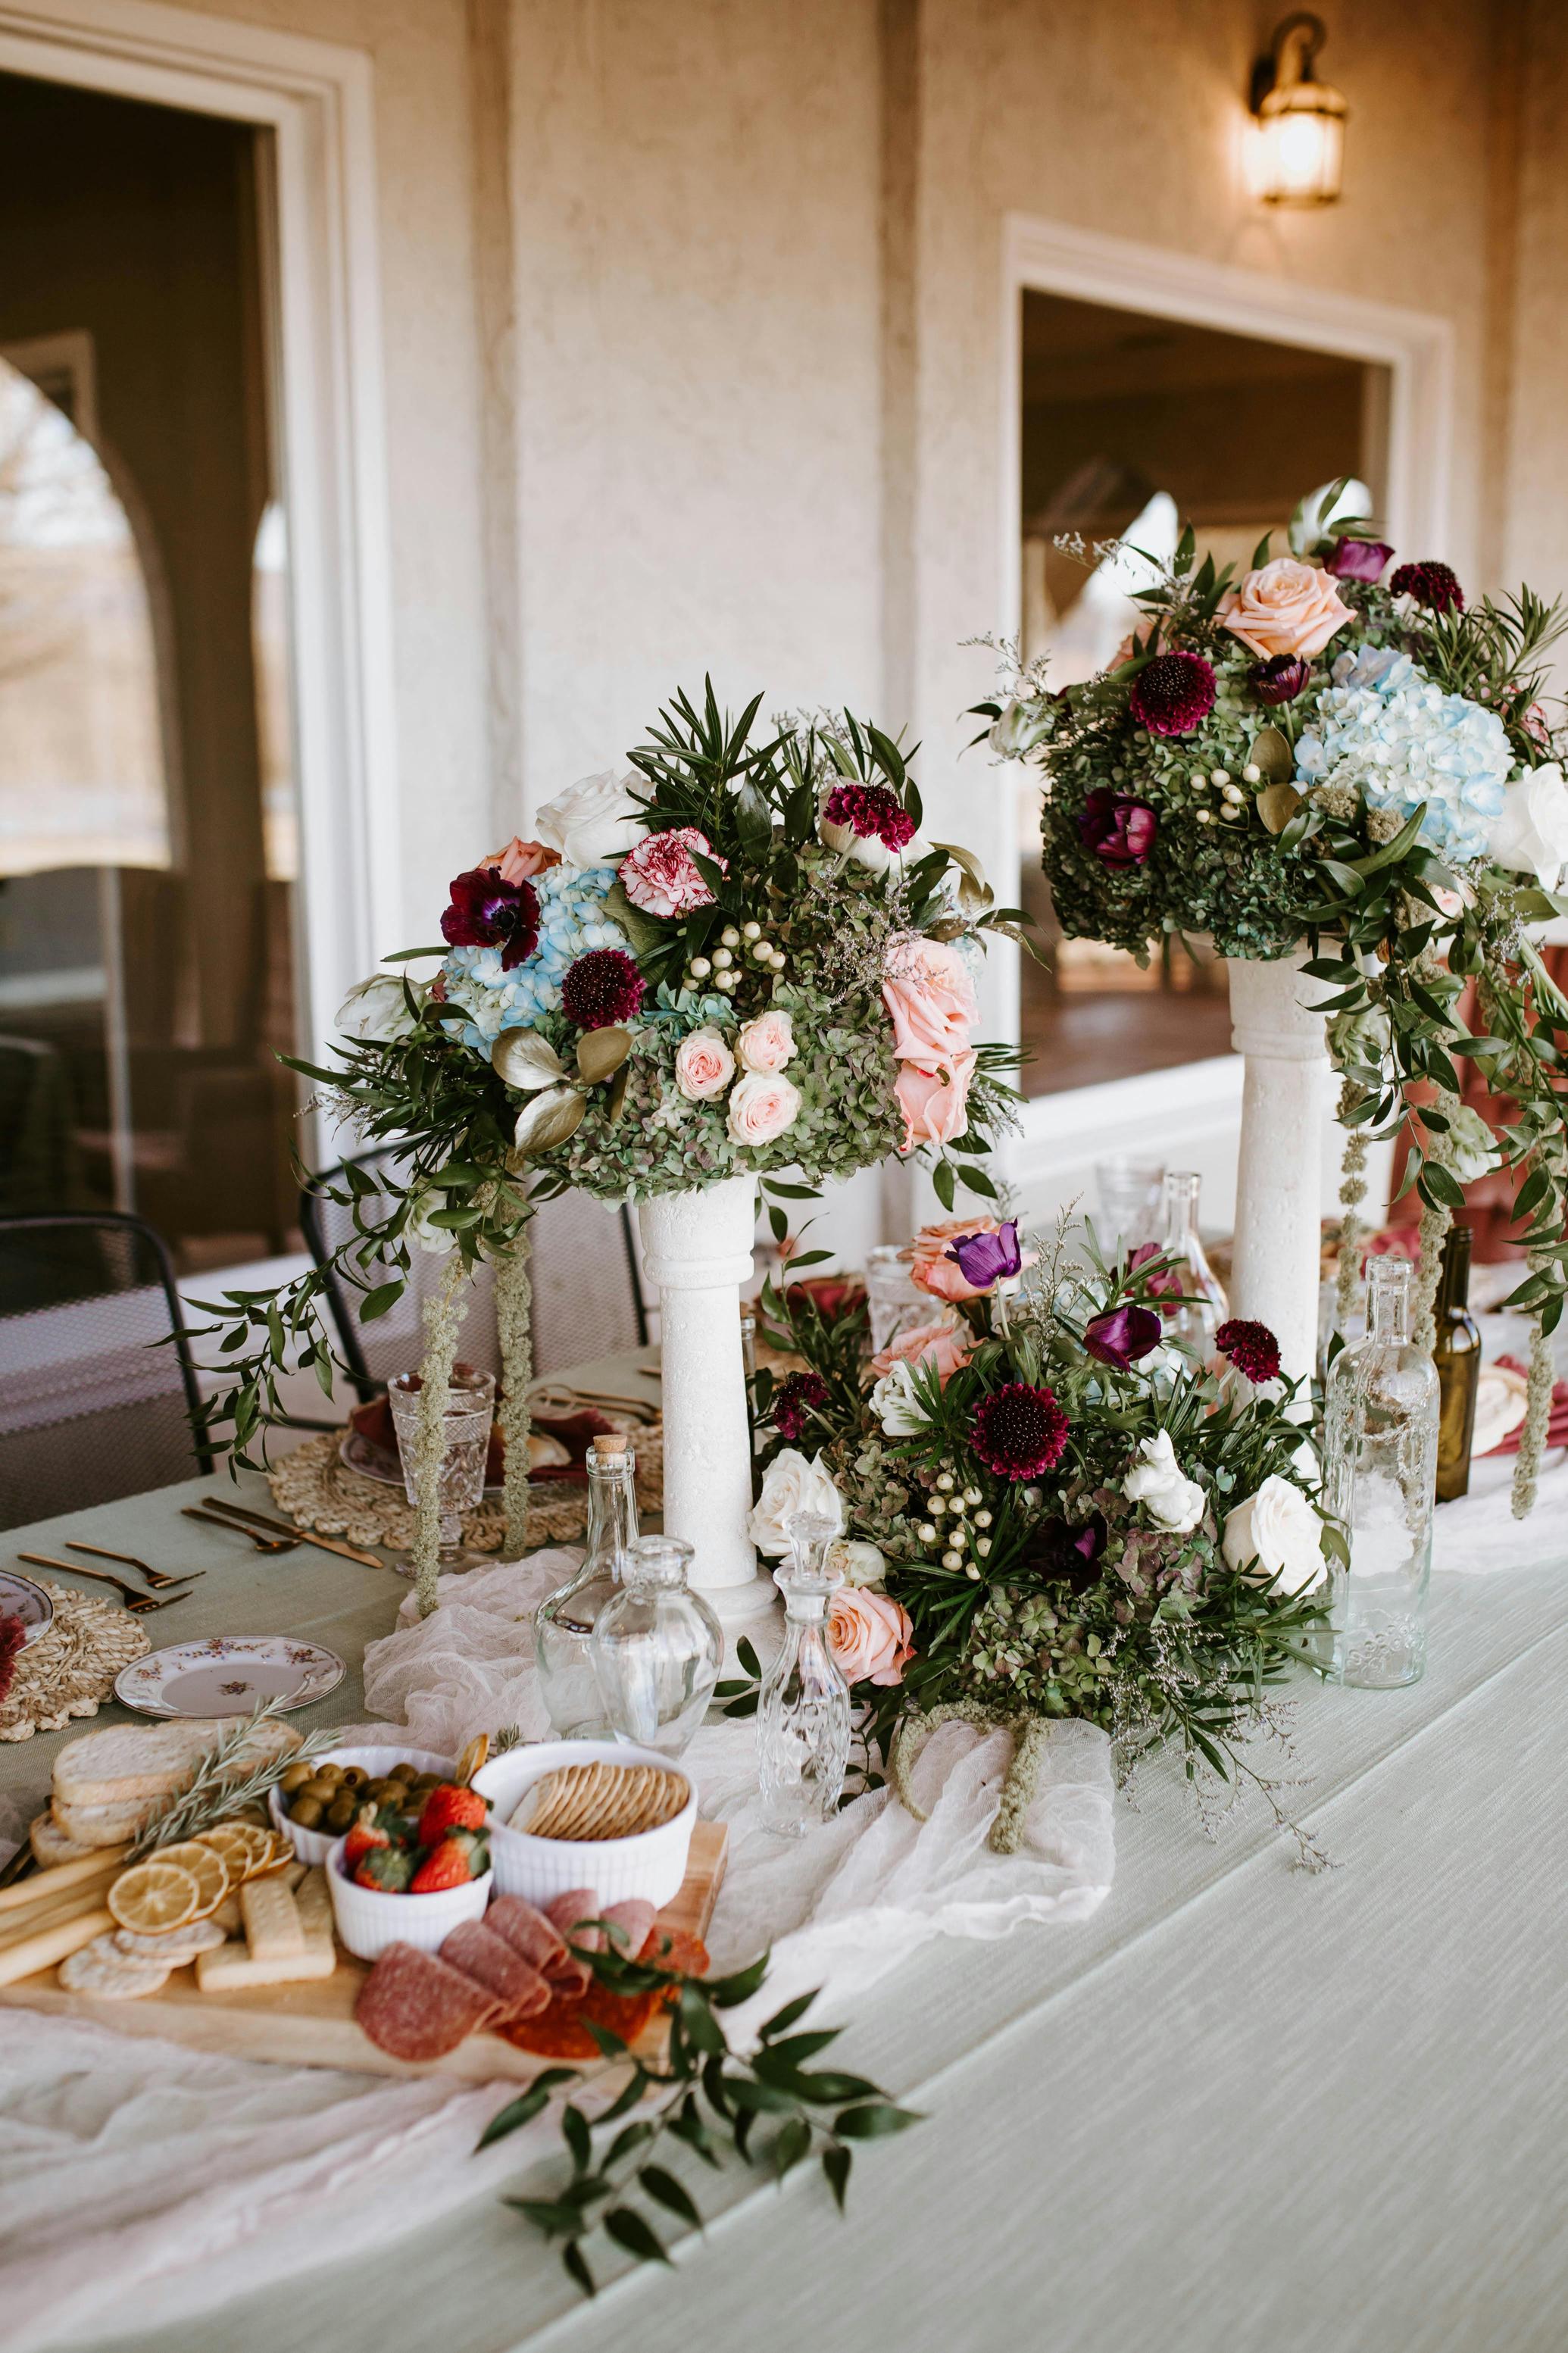 Dekoracje kwiatowe na weselnym stole – centrum uwagi